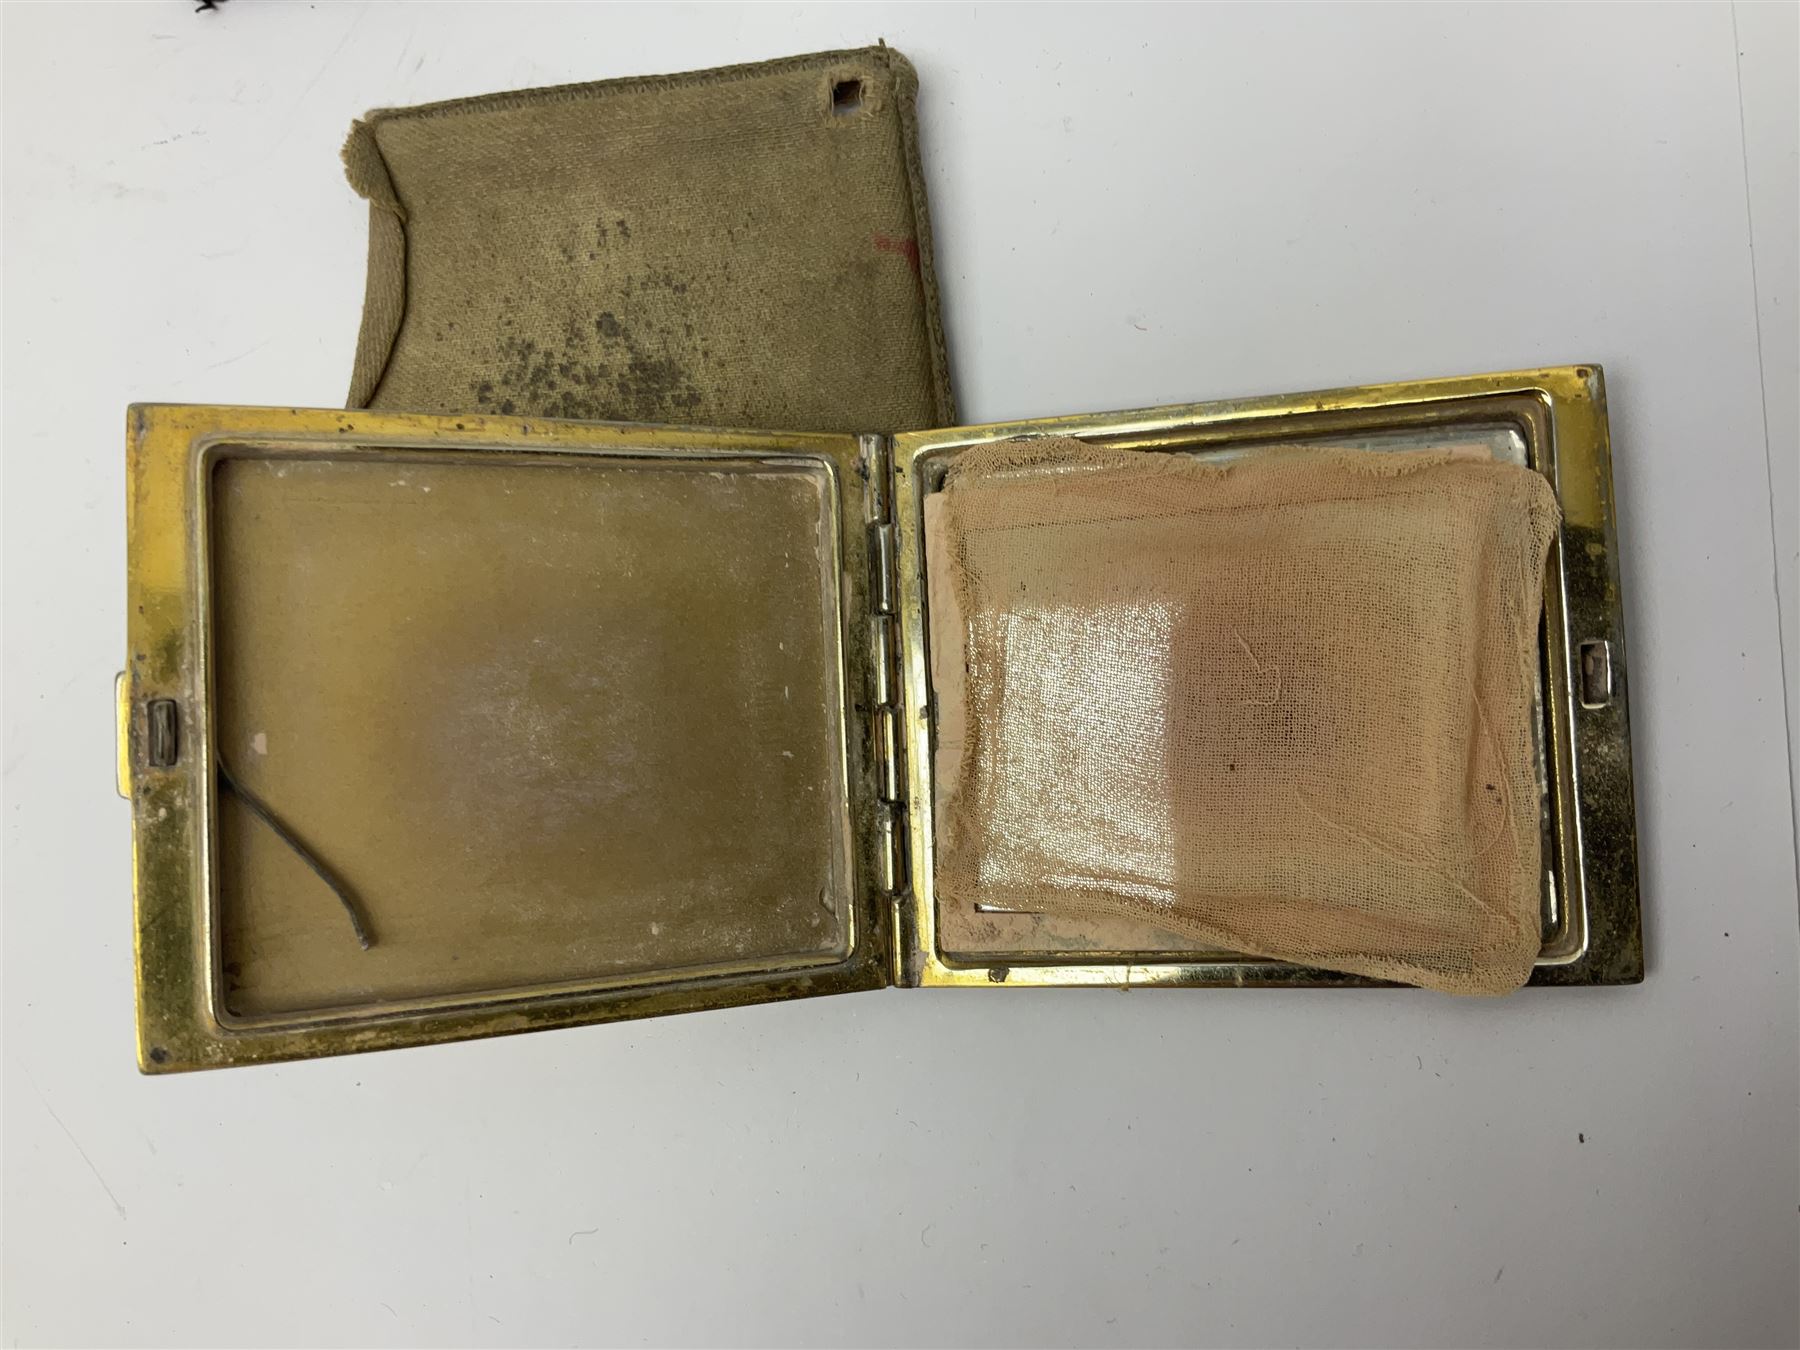 St Dupont gold plated cigarette lighter - Image 7 of 13